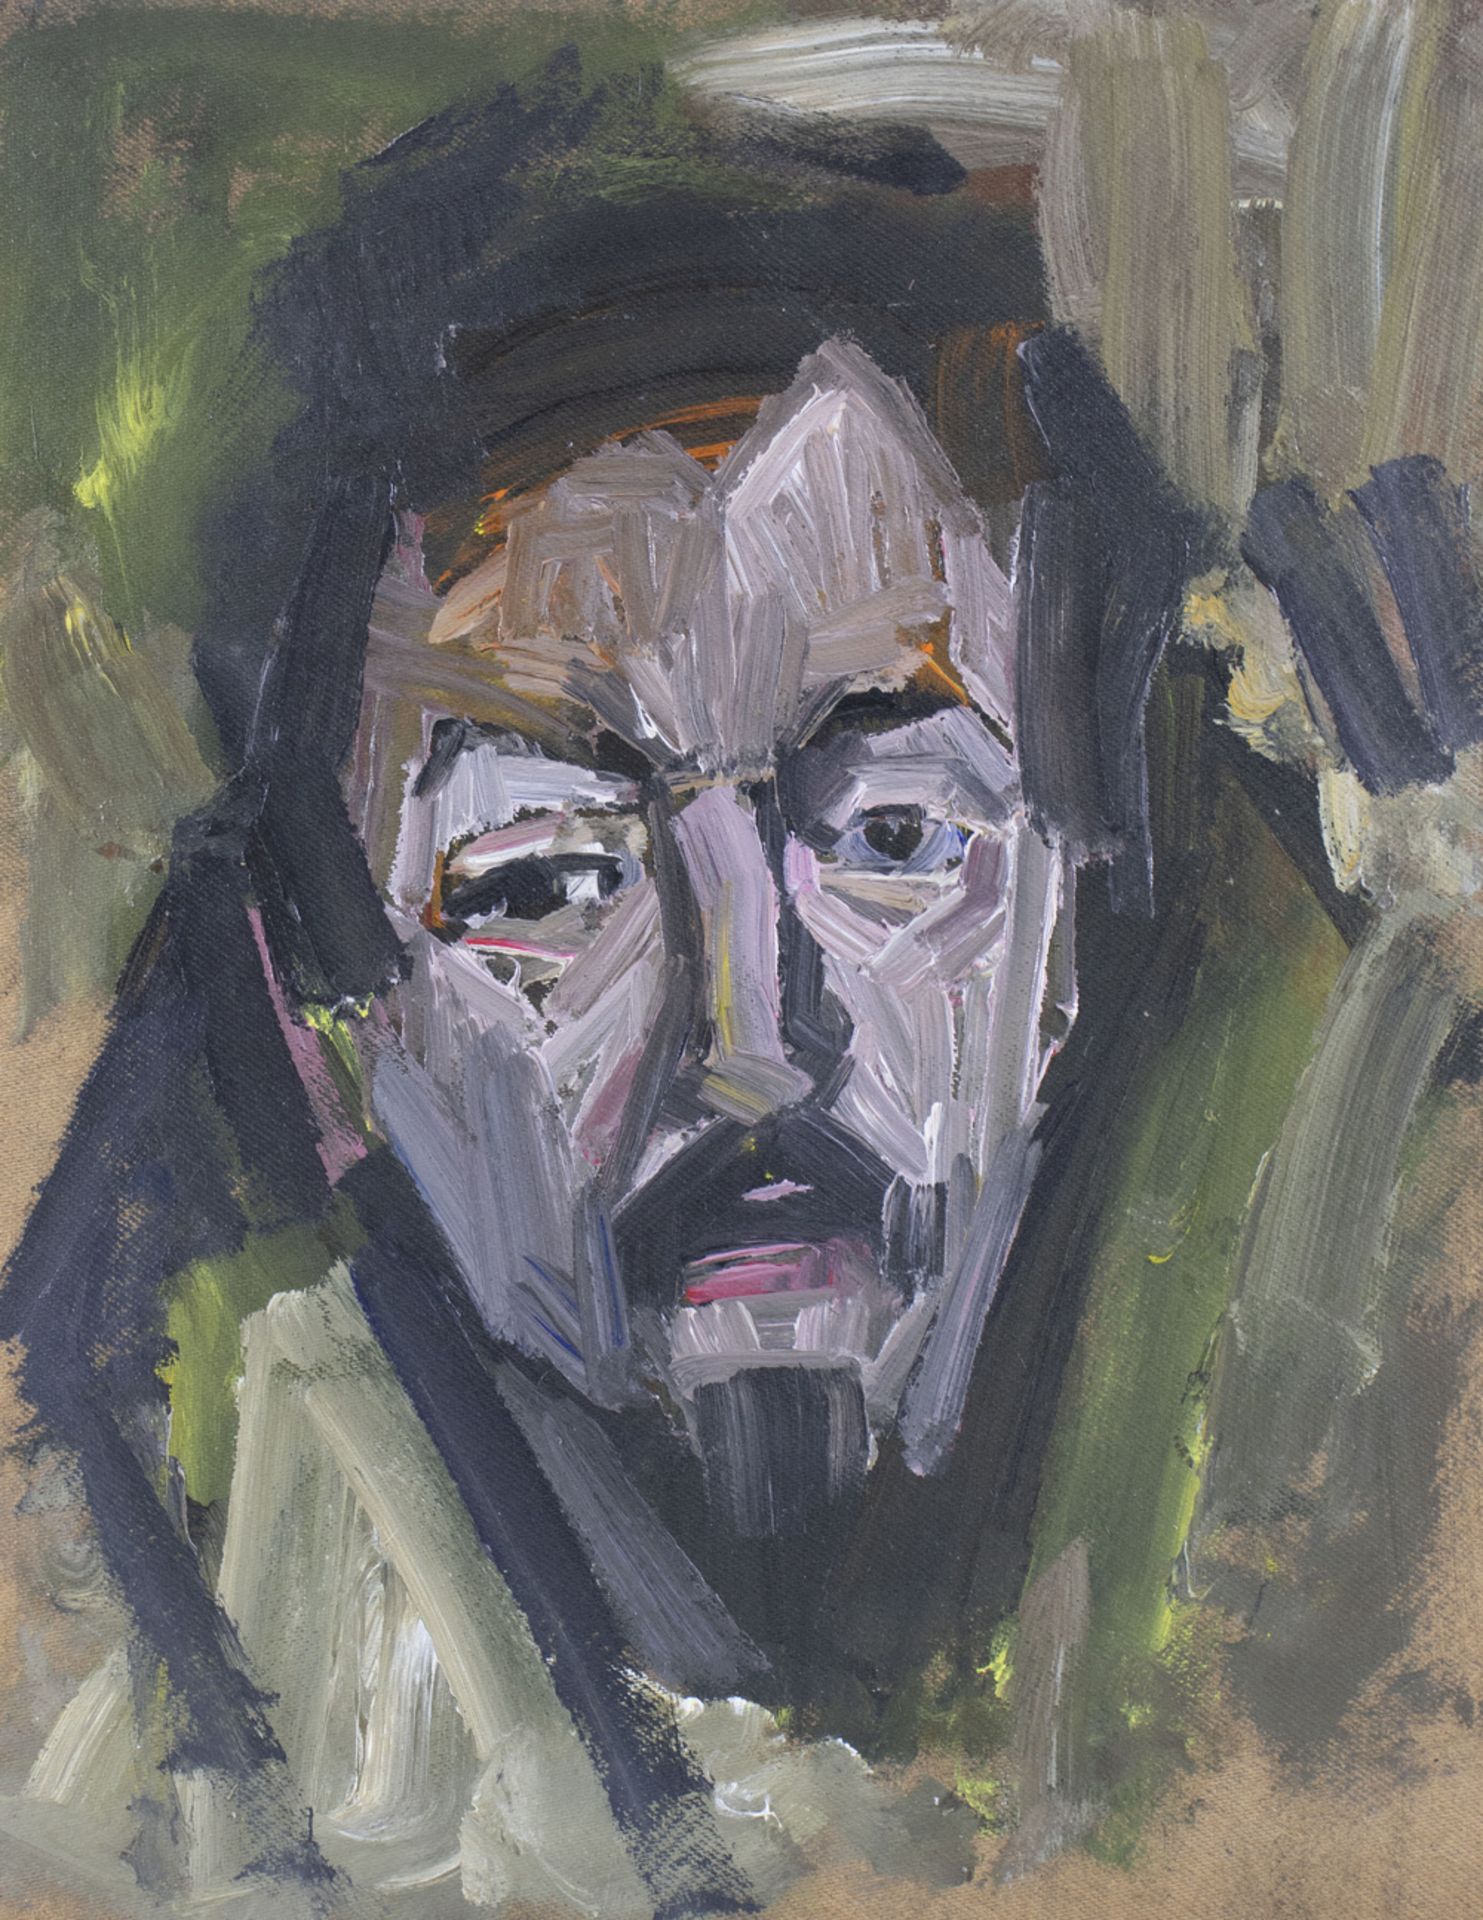 Unbekannter Künstler des 20. Jh., 'Porträtkopf-Studie' / A portrait head study